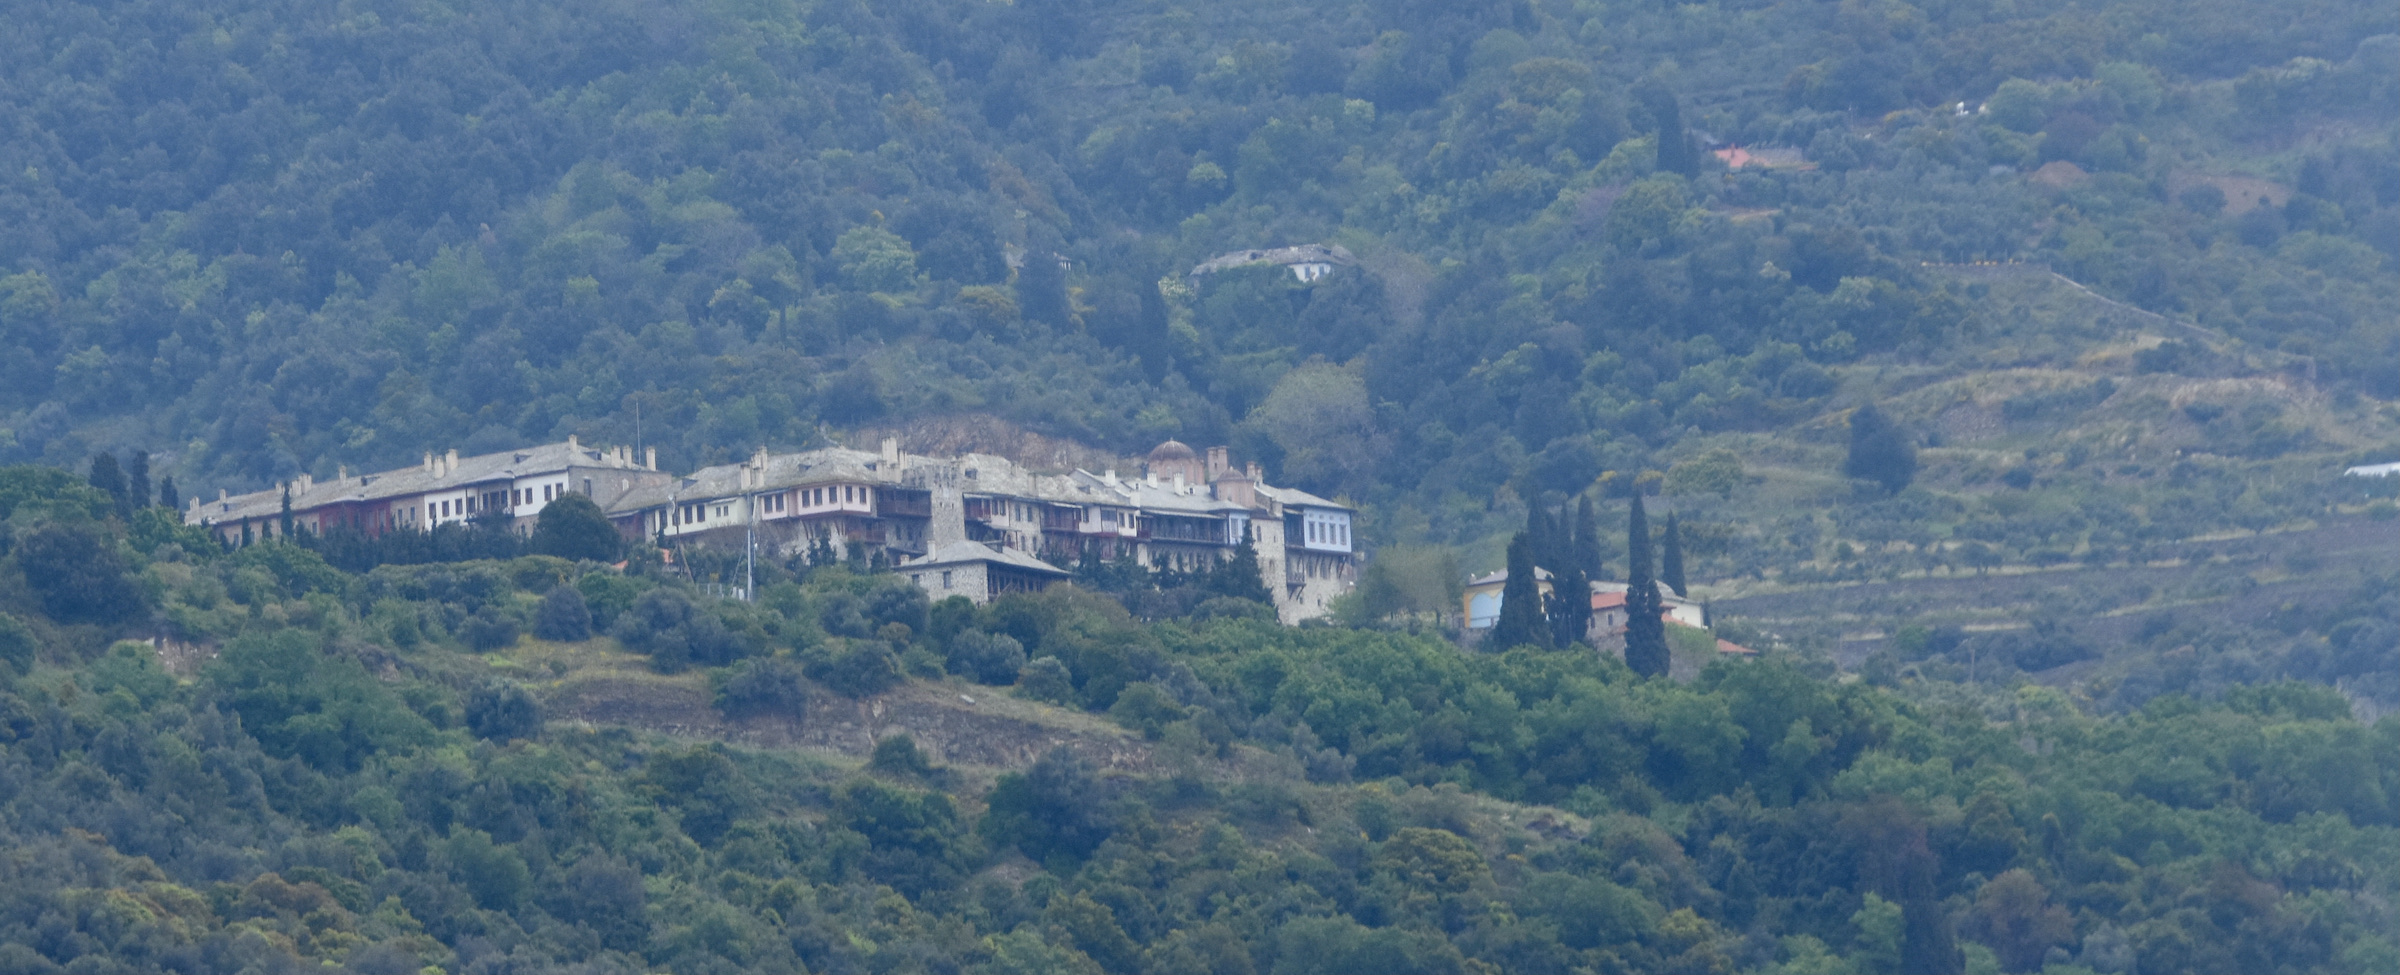 Xiropotamou Monastery, Mount Athos